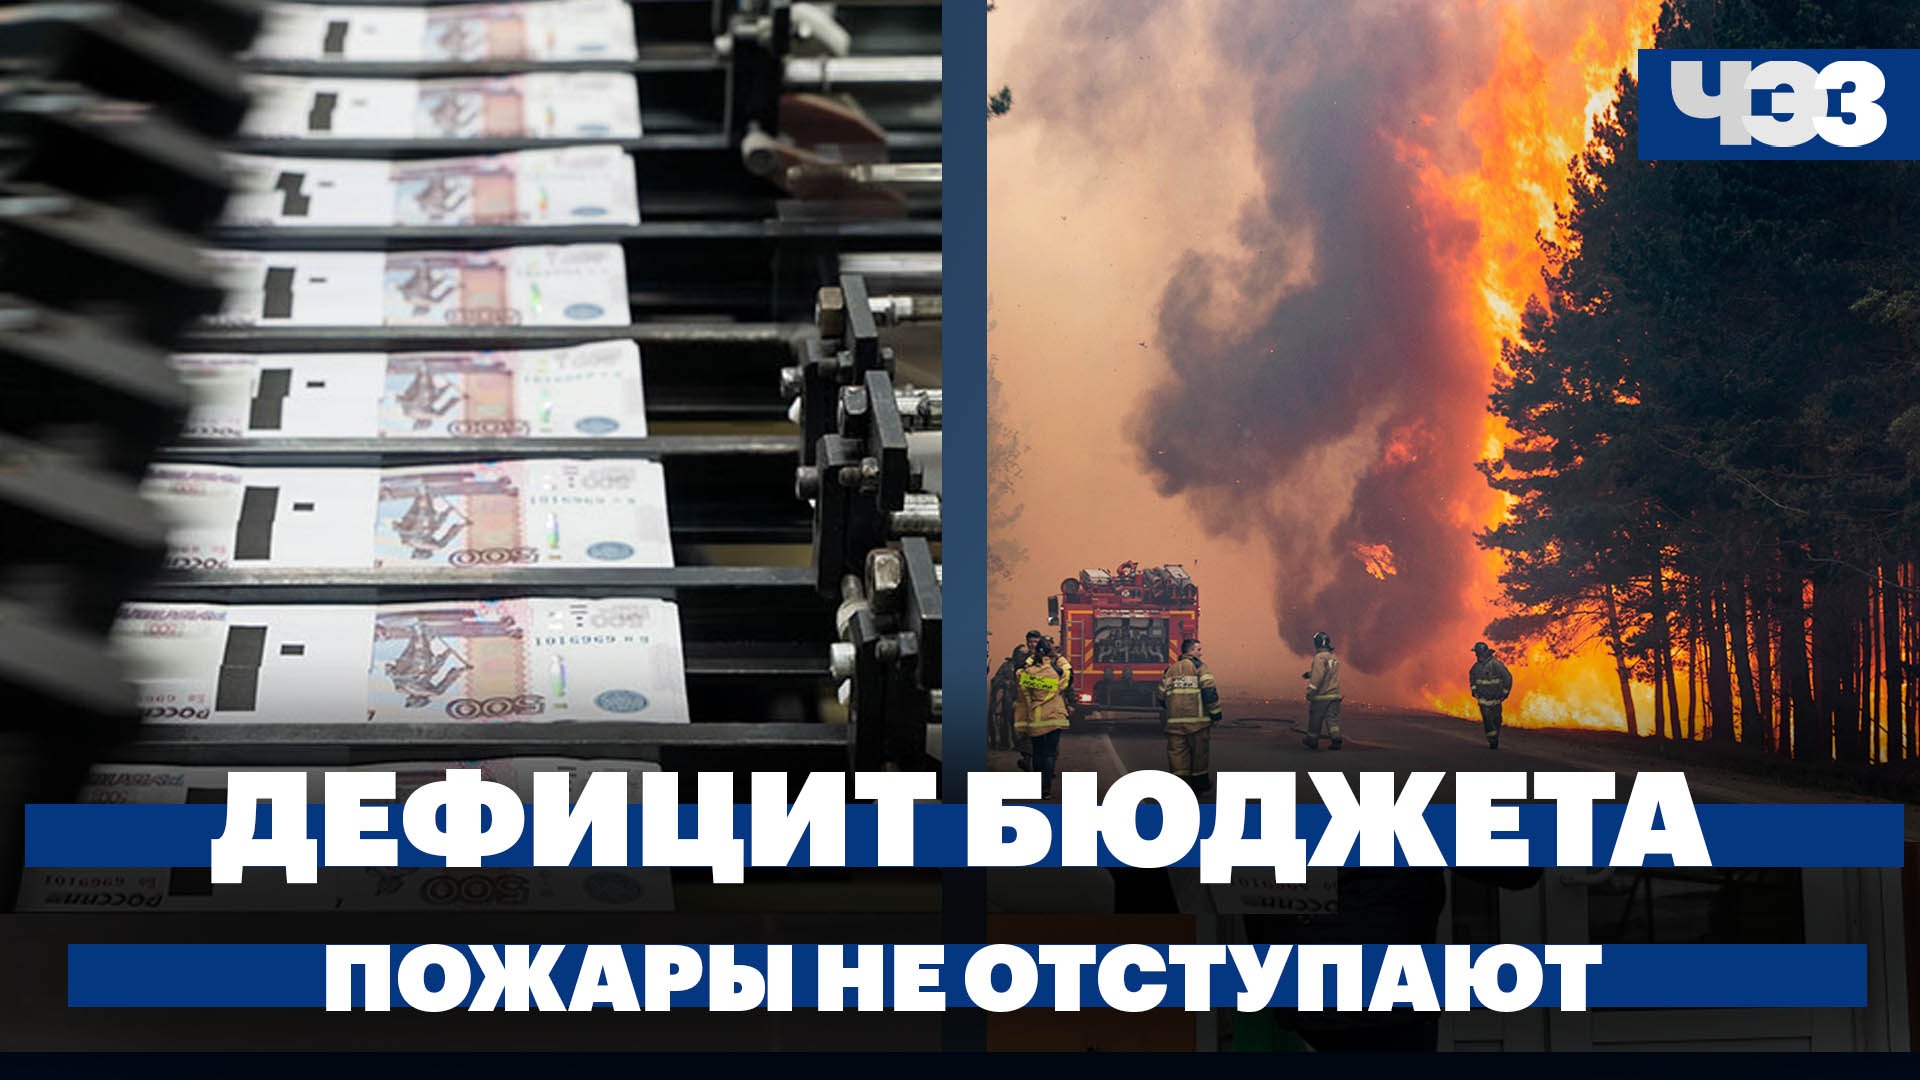 Природные пожары не отступают, дефицит бюджета в апреле составил 1 трлн, ракеты для Украины